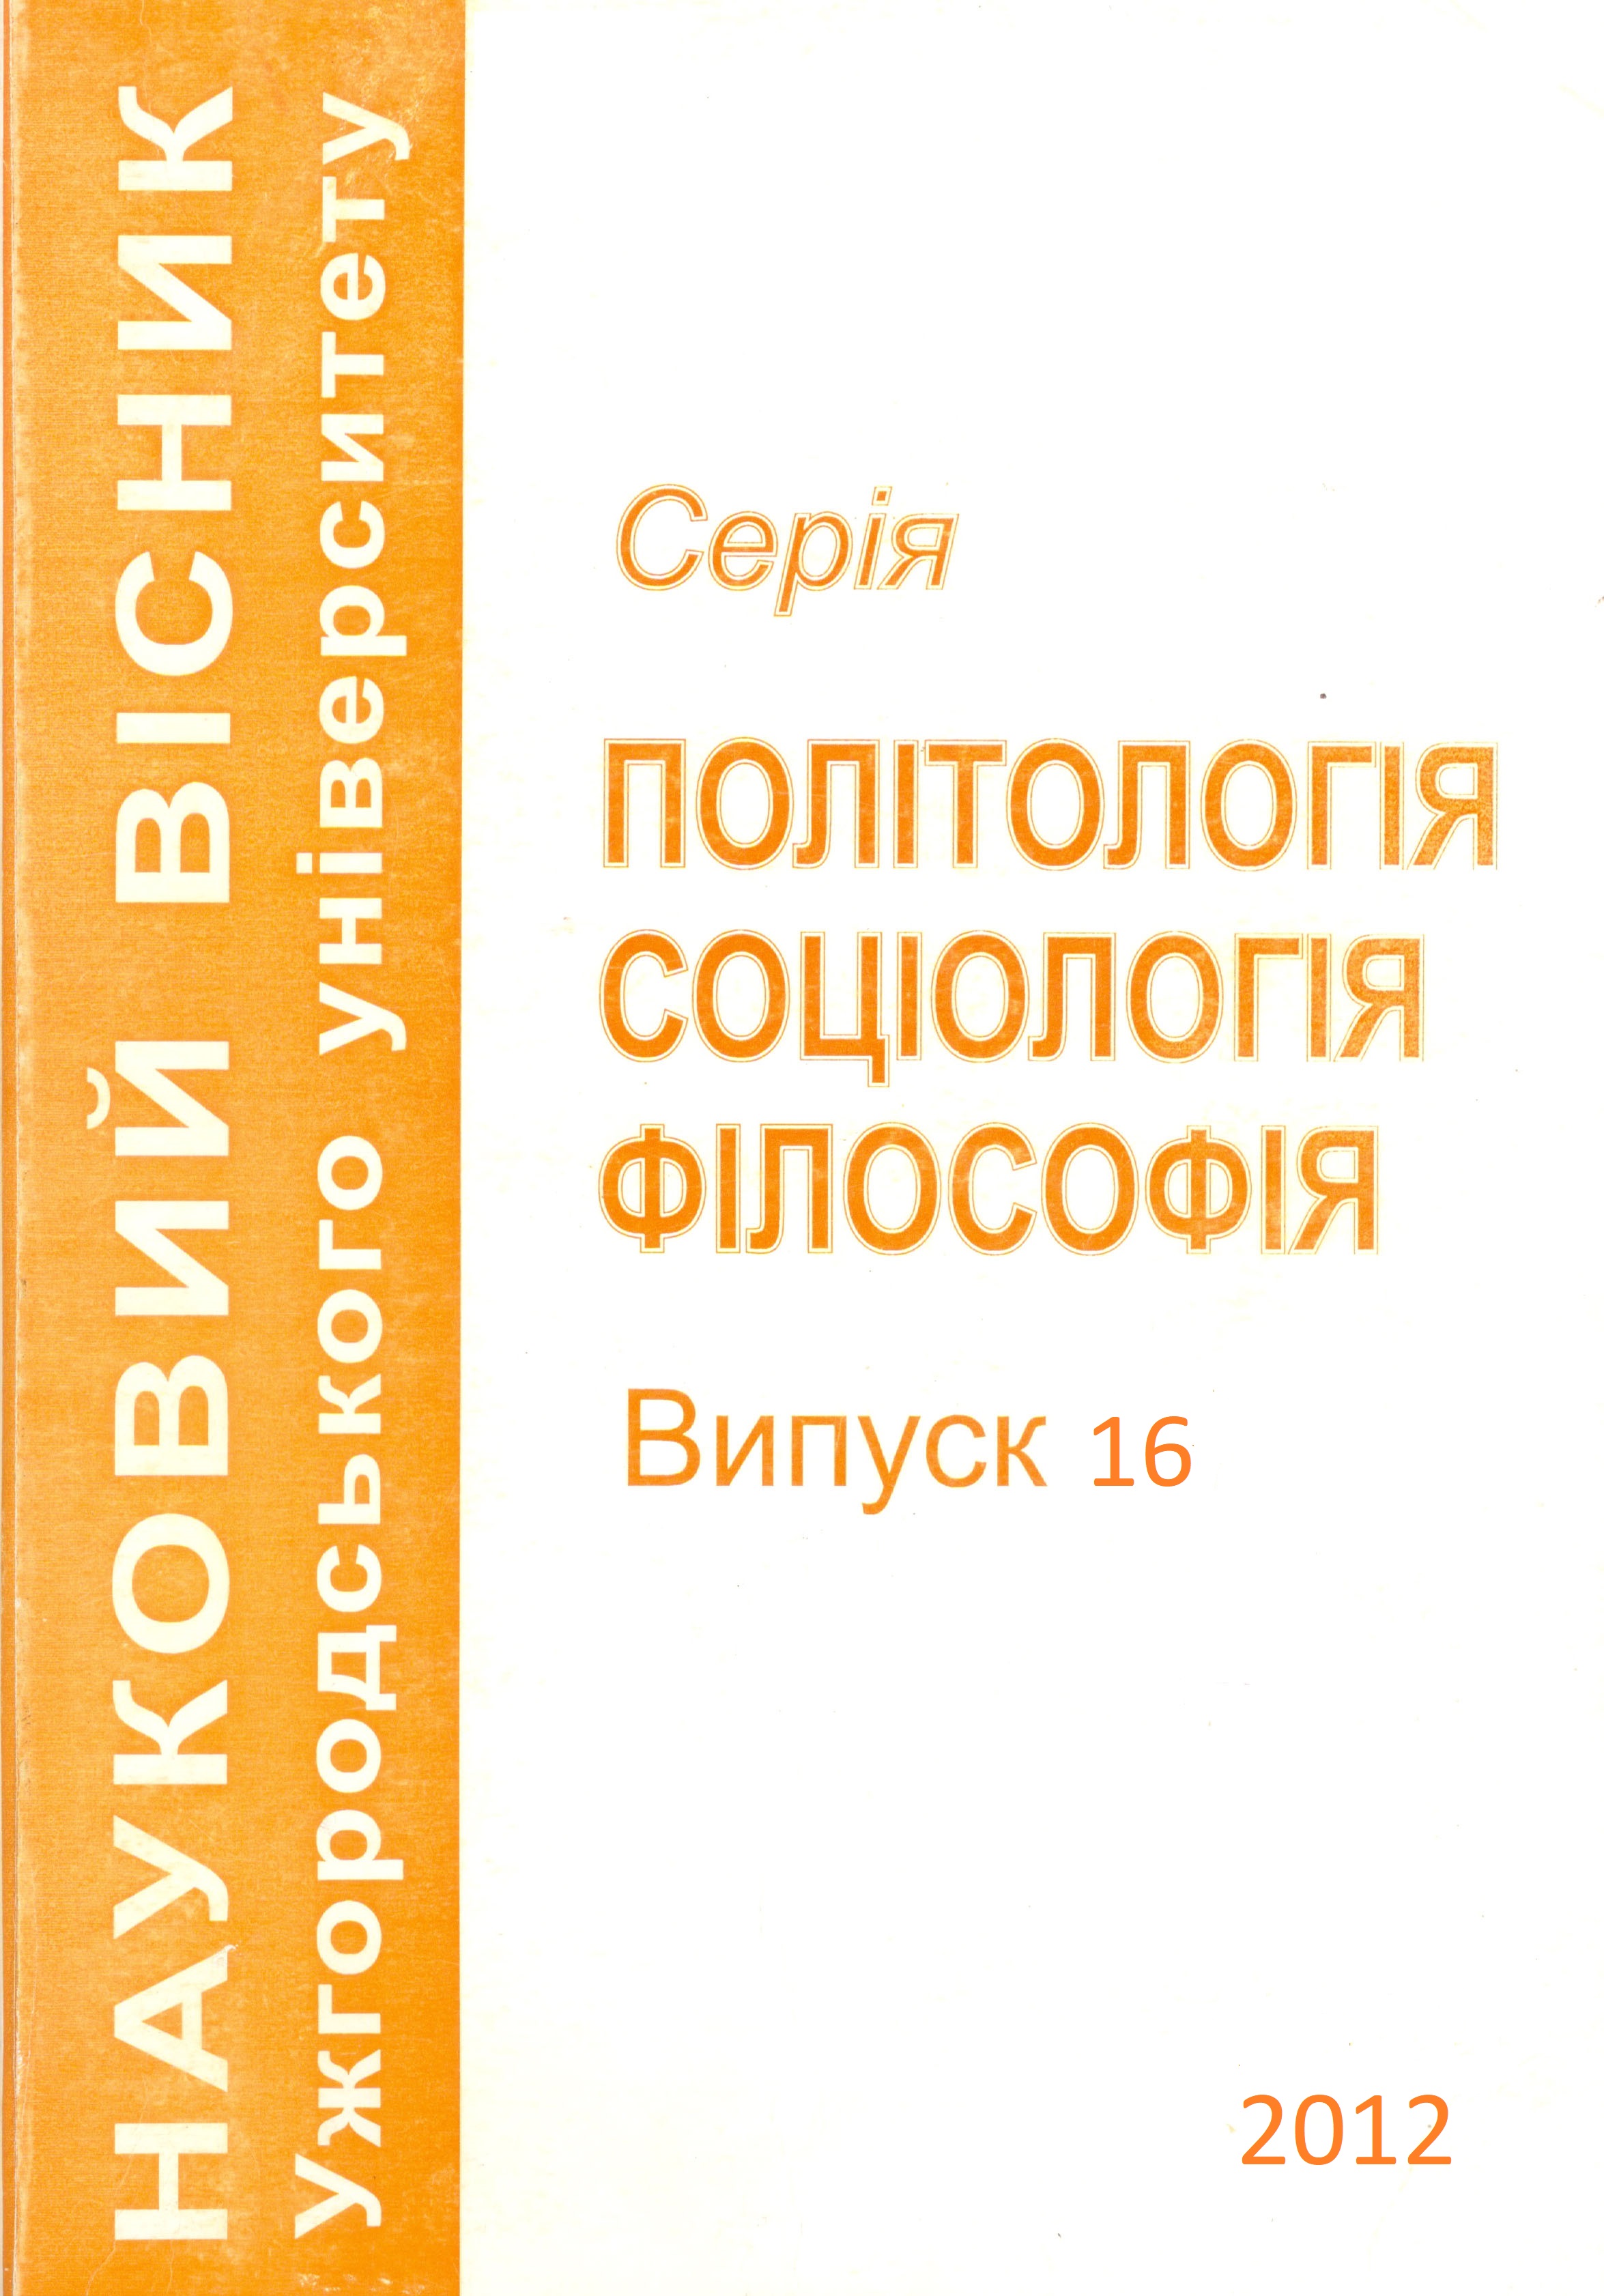 collection logo